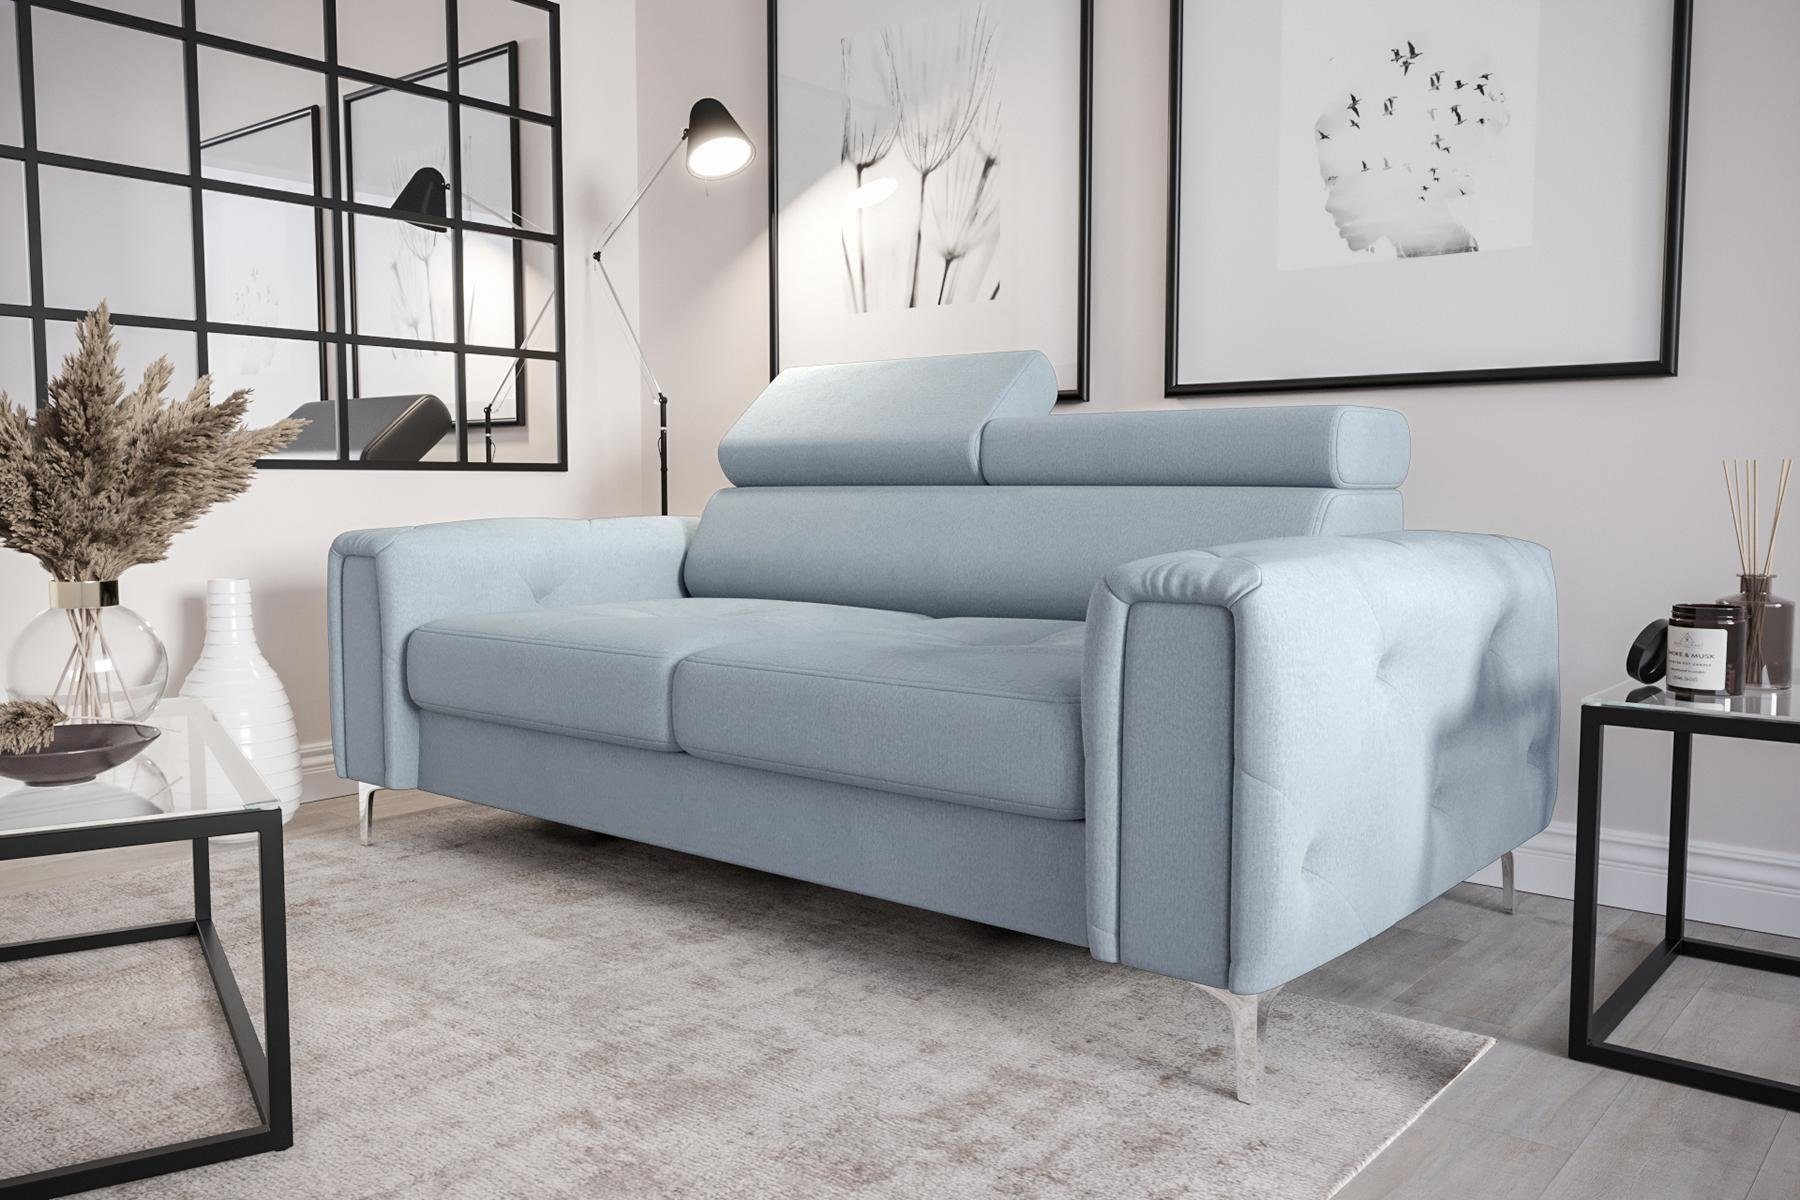 JVmoebel Sofa Designer 2-Sitzer Sofa Blau | Polster Blau Couchen Möbel Sitz, in | Blau Couch Sofa Europe Luxus Made